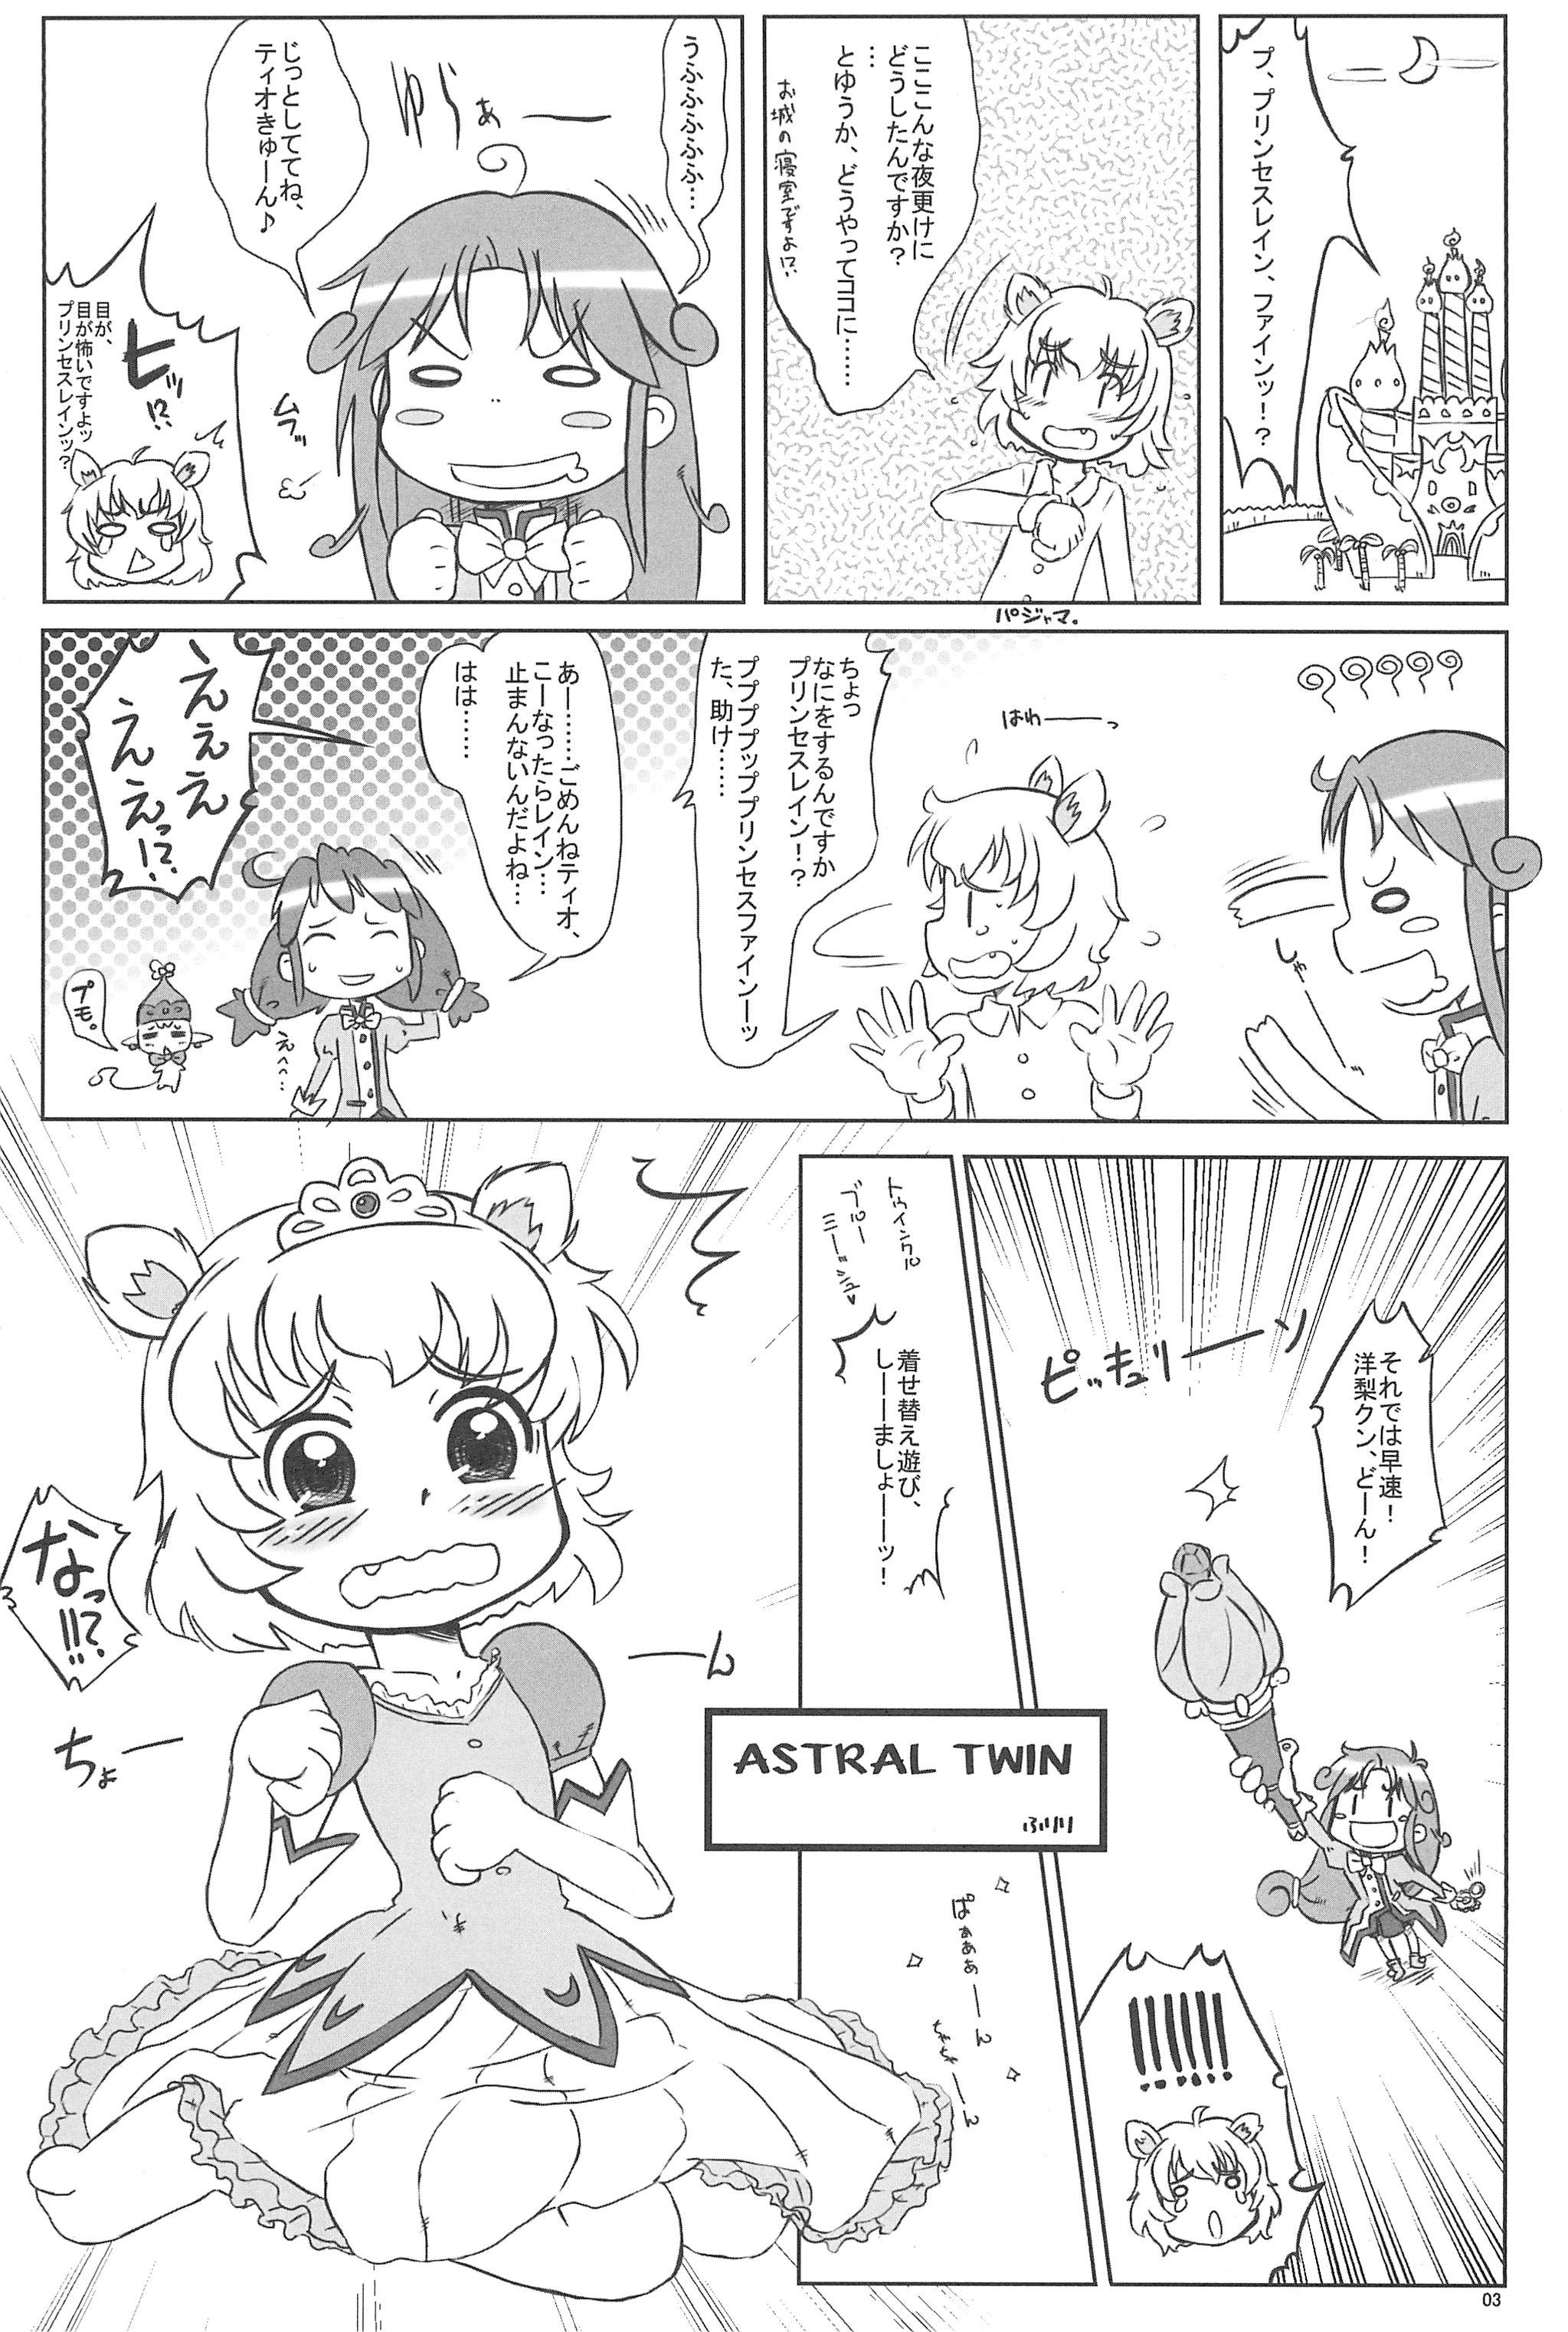 White Chick Firefly - Fushigiboshi no futagohime Party - Page 3